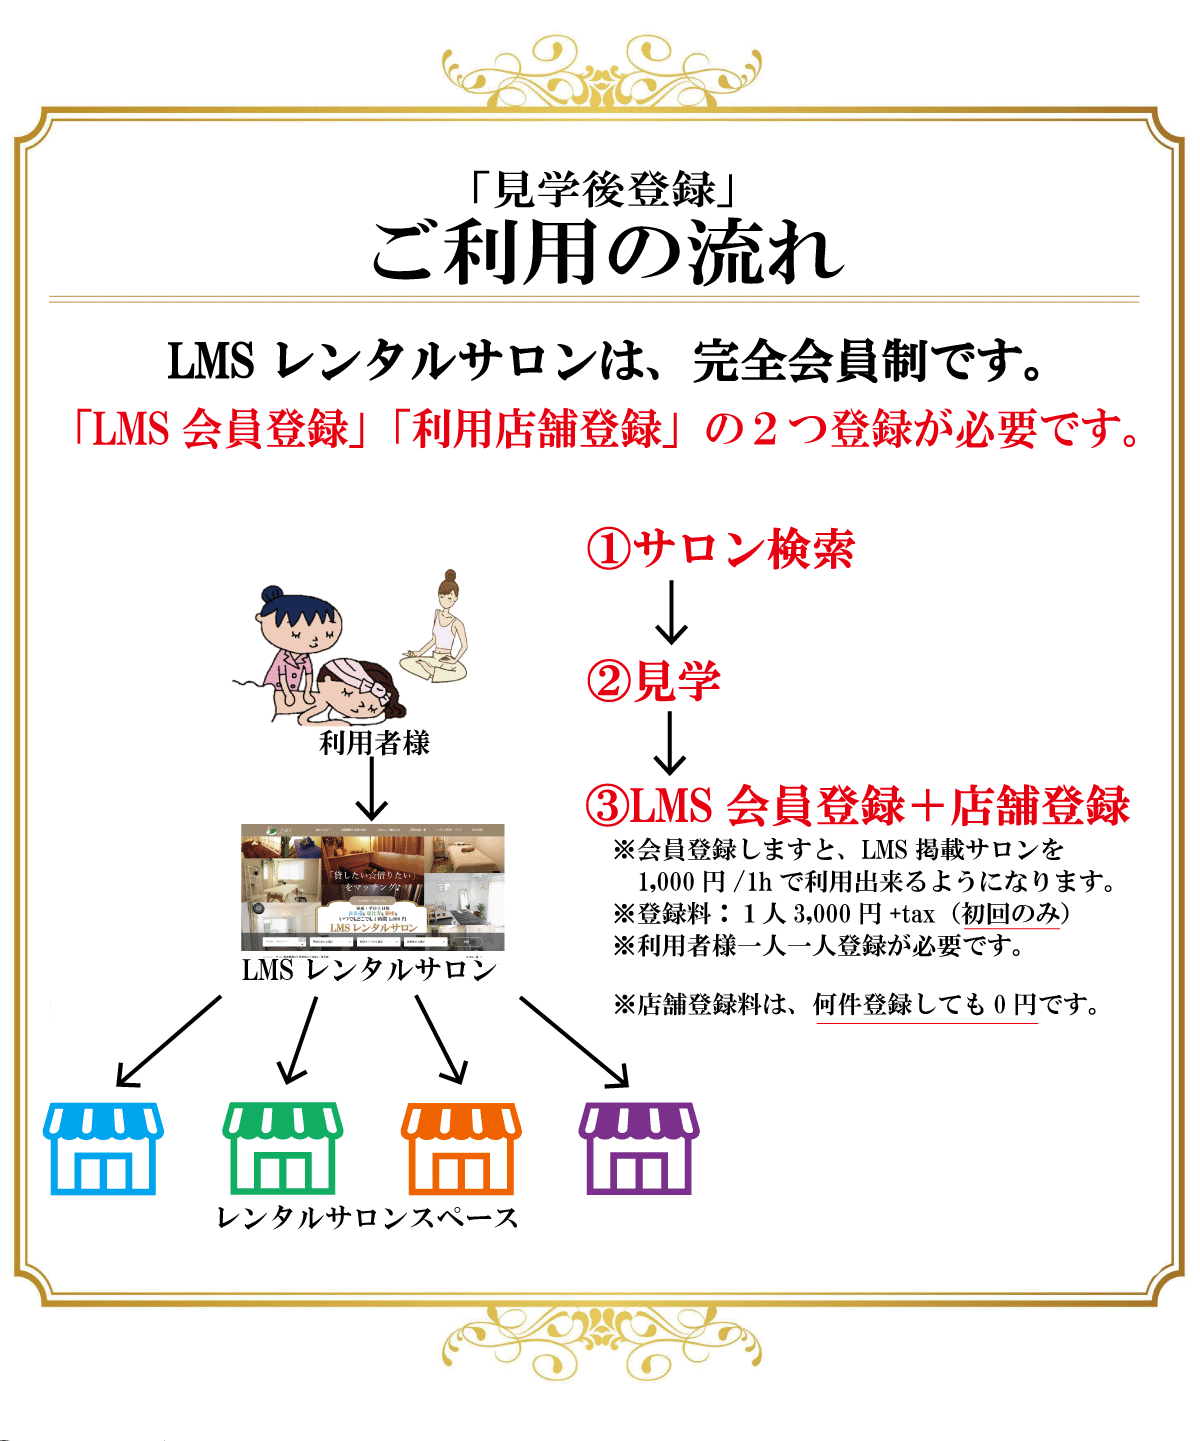 レンタルサロンエステ開業蒲田・品川駅近サロン開業スクール安人気